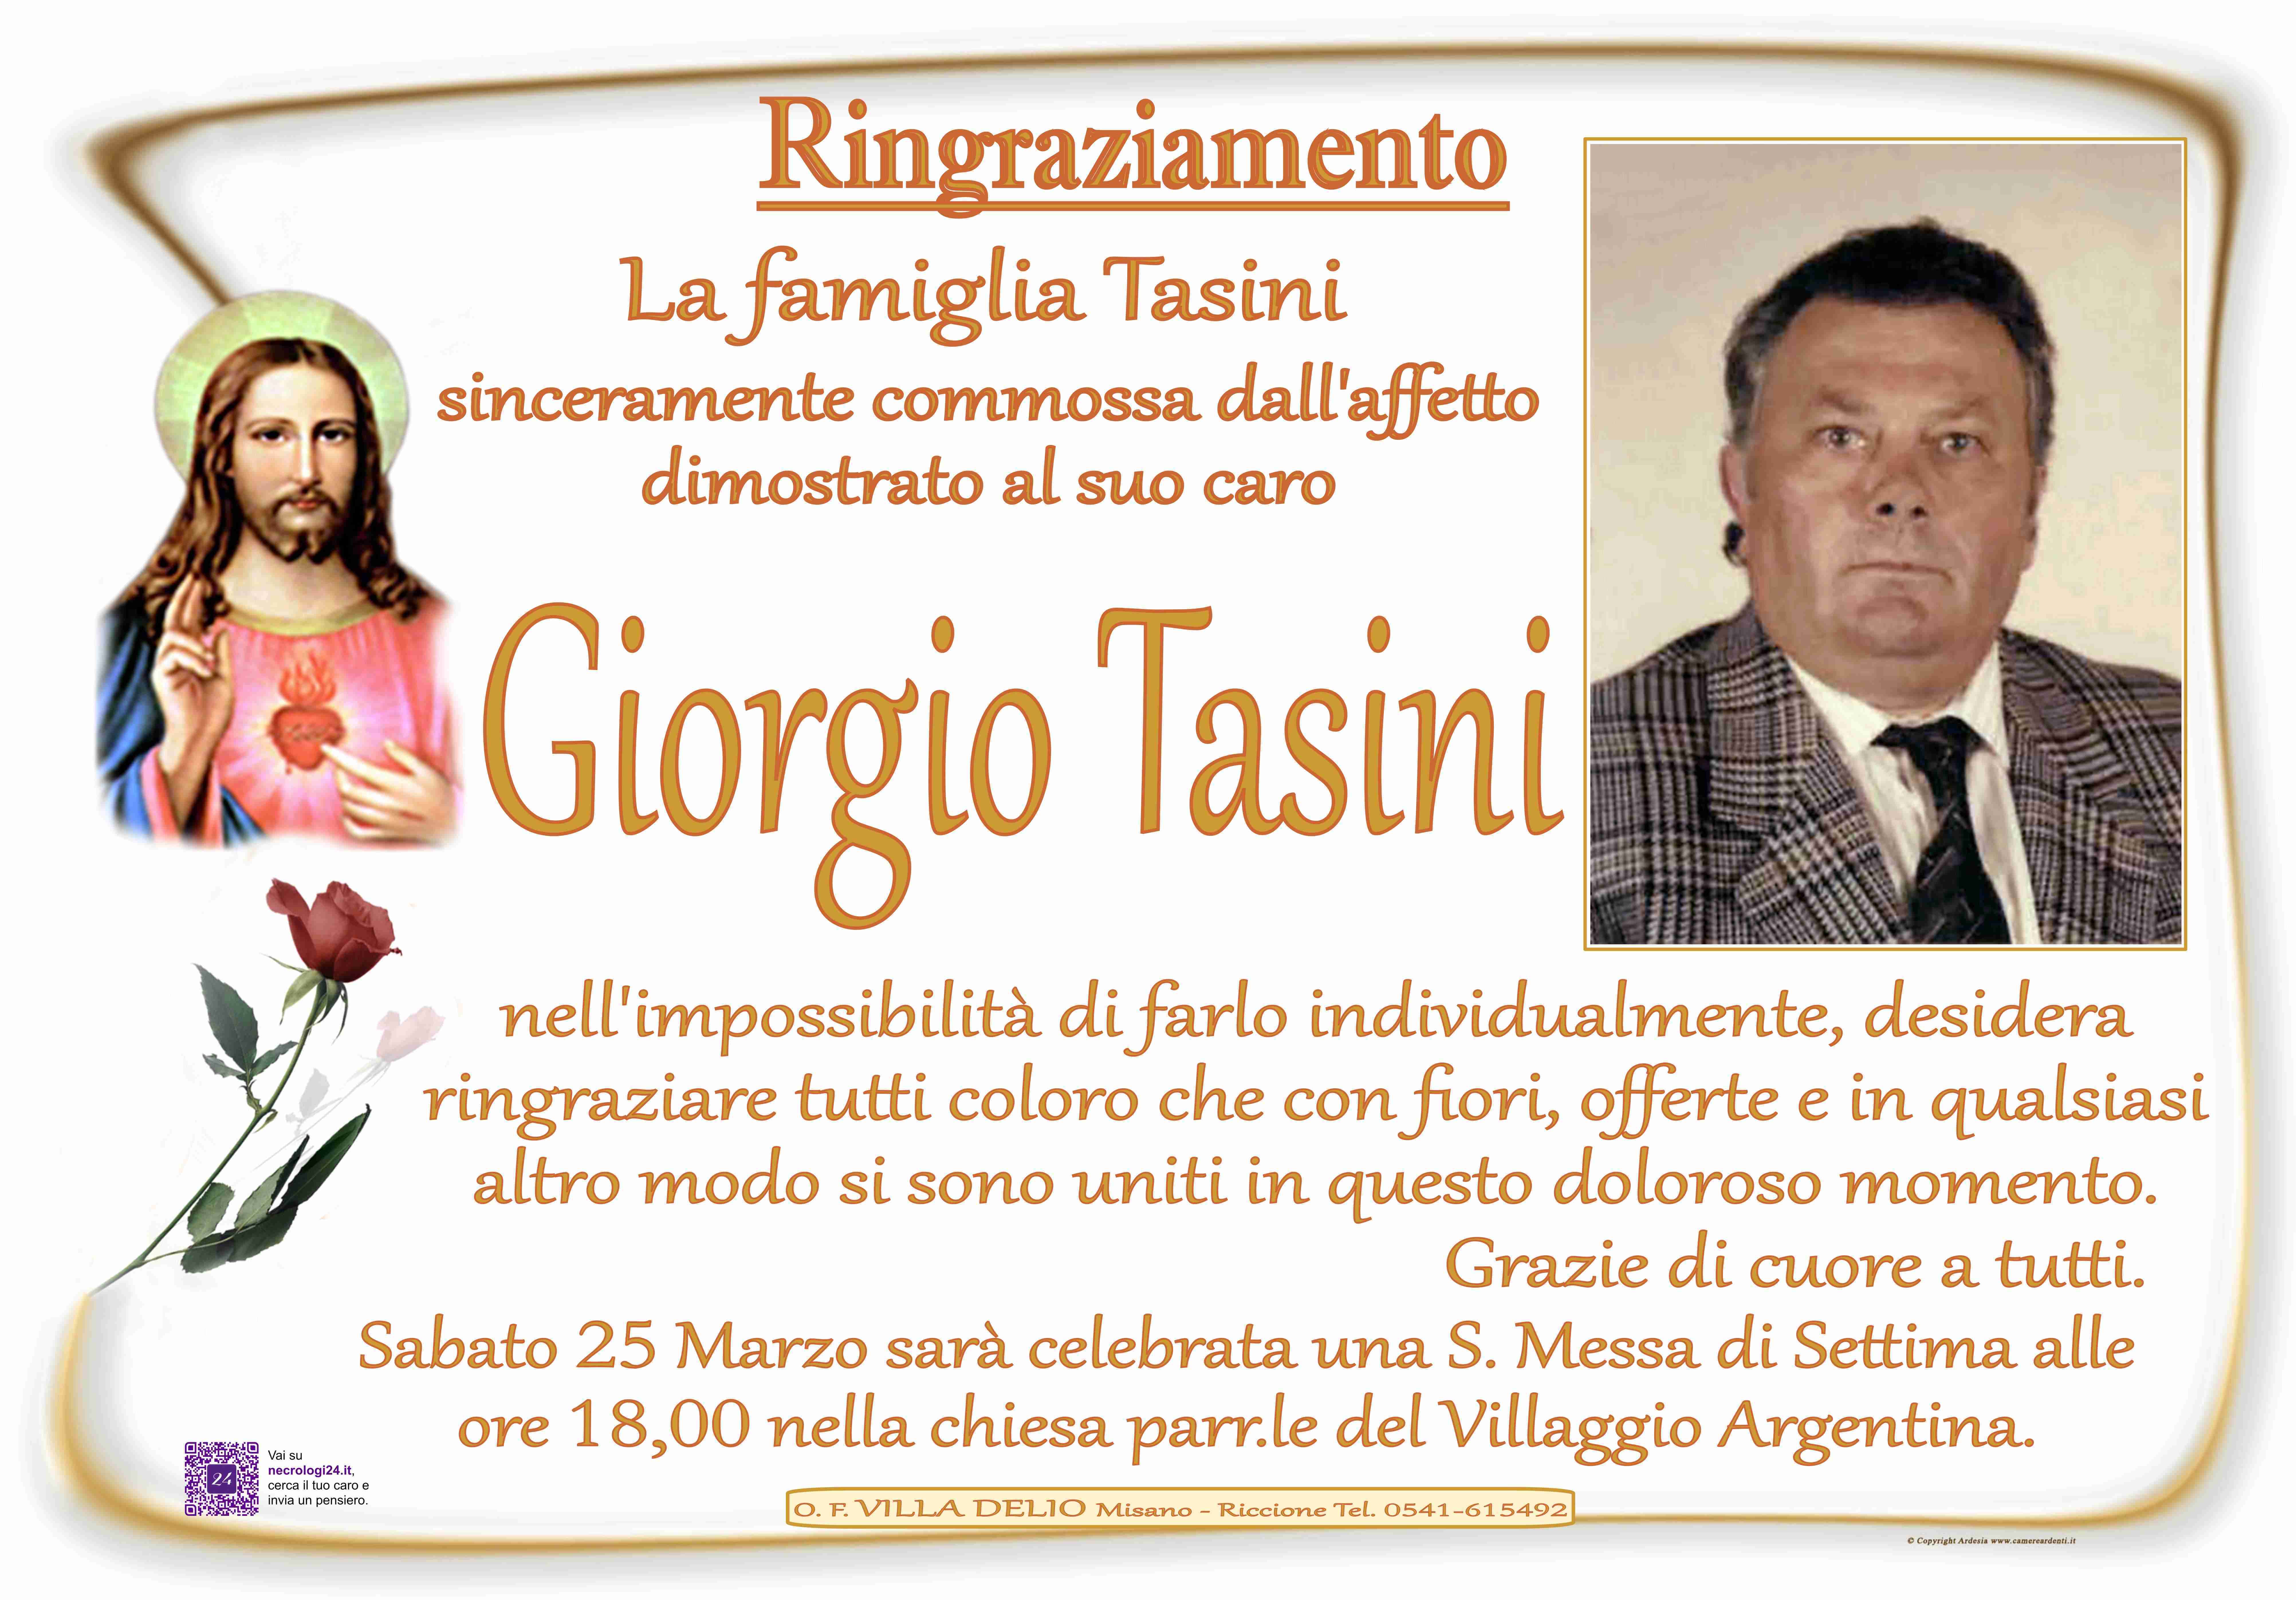 Giorgio Tasini